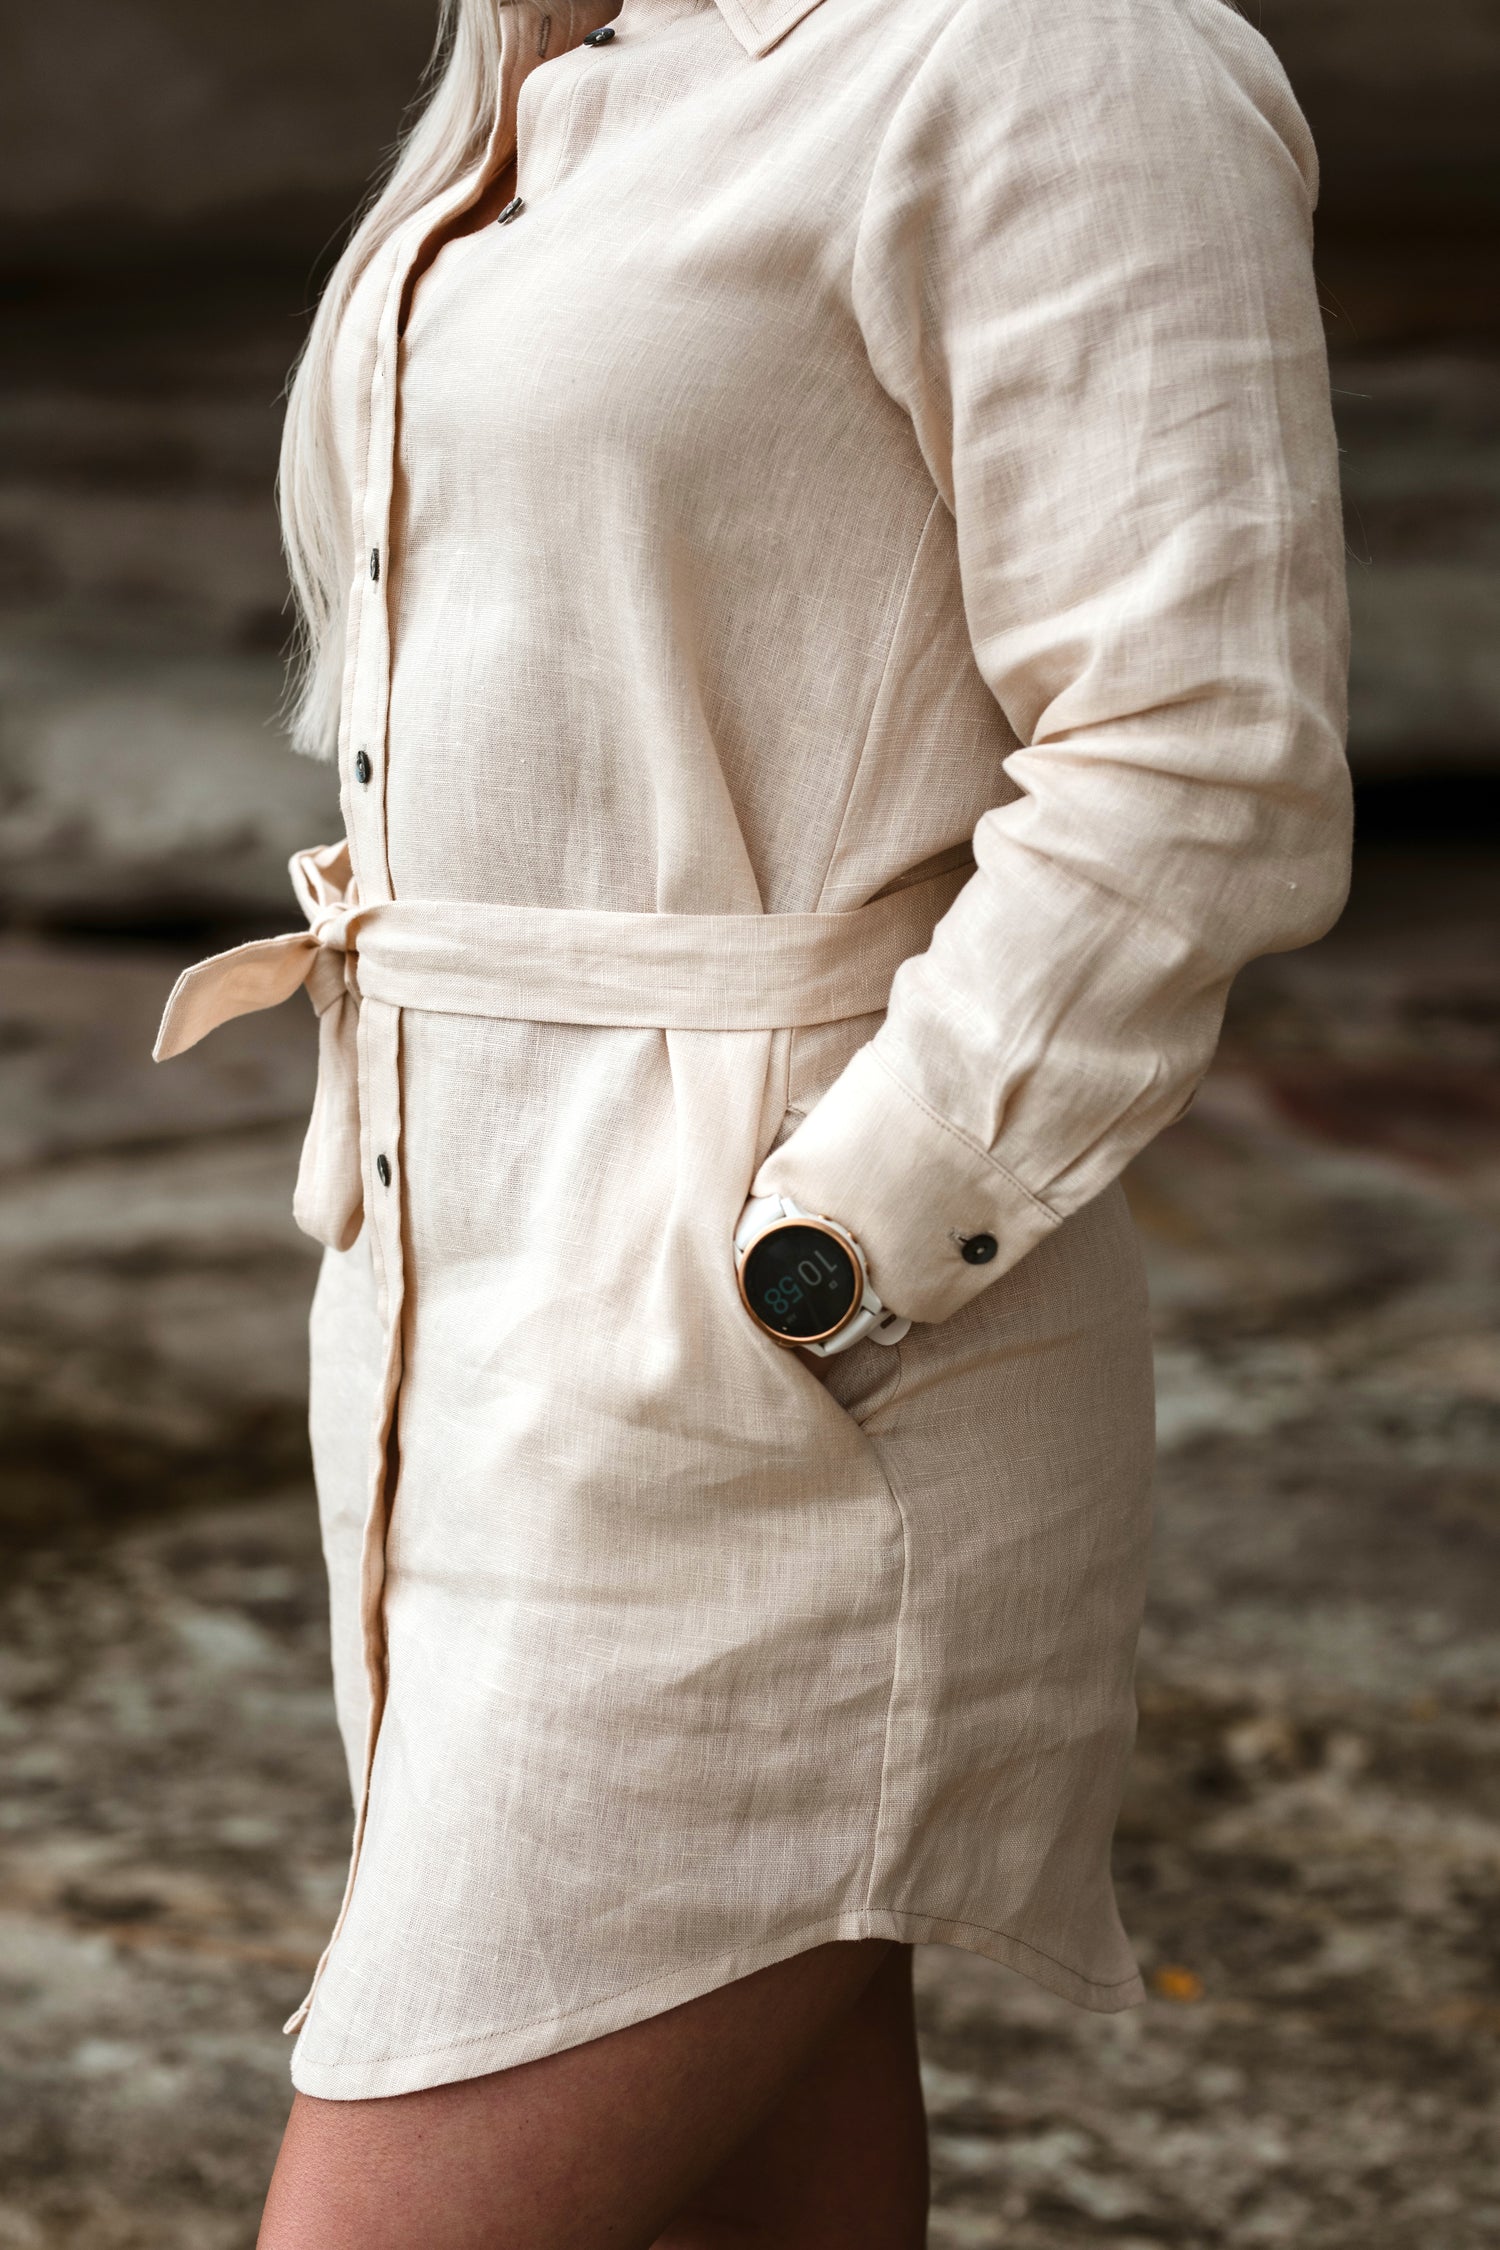 A close up of a petite woman wearing a short, sandy beige shirt dress with a waist tie.